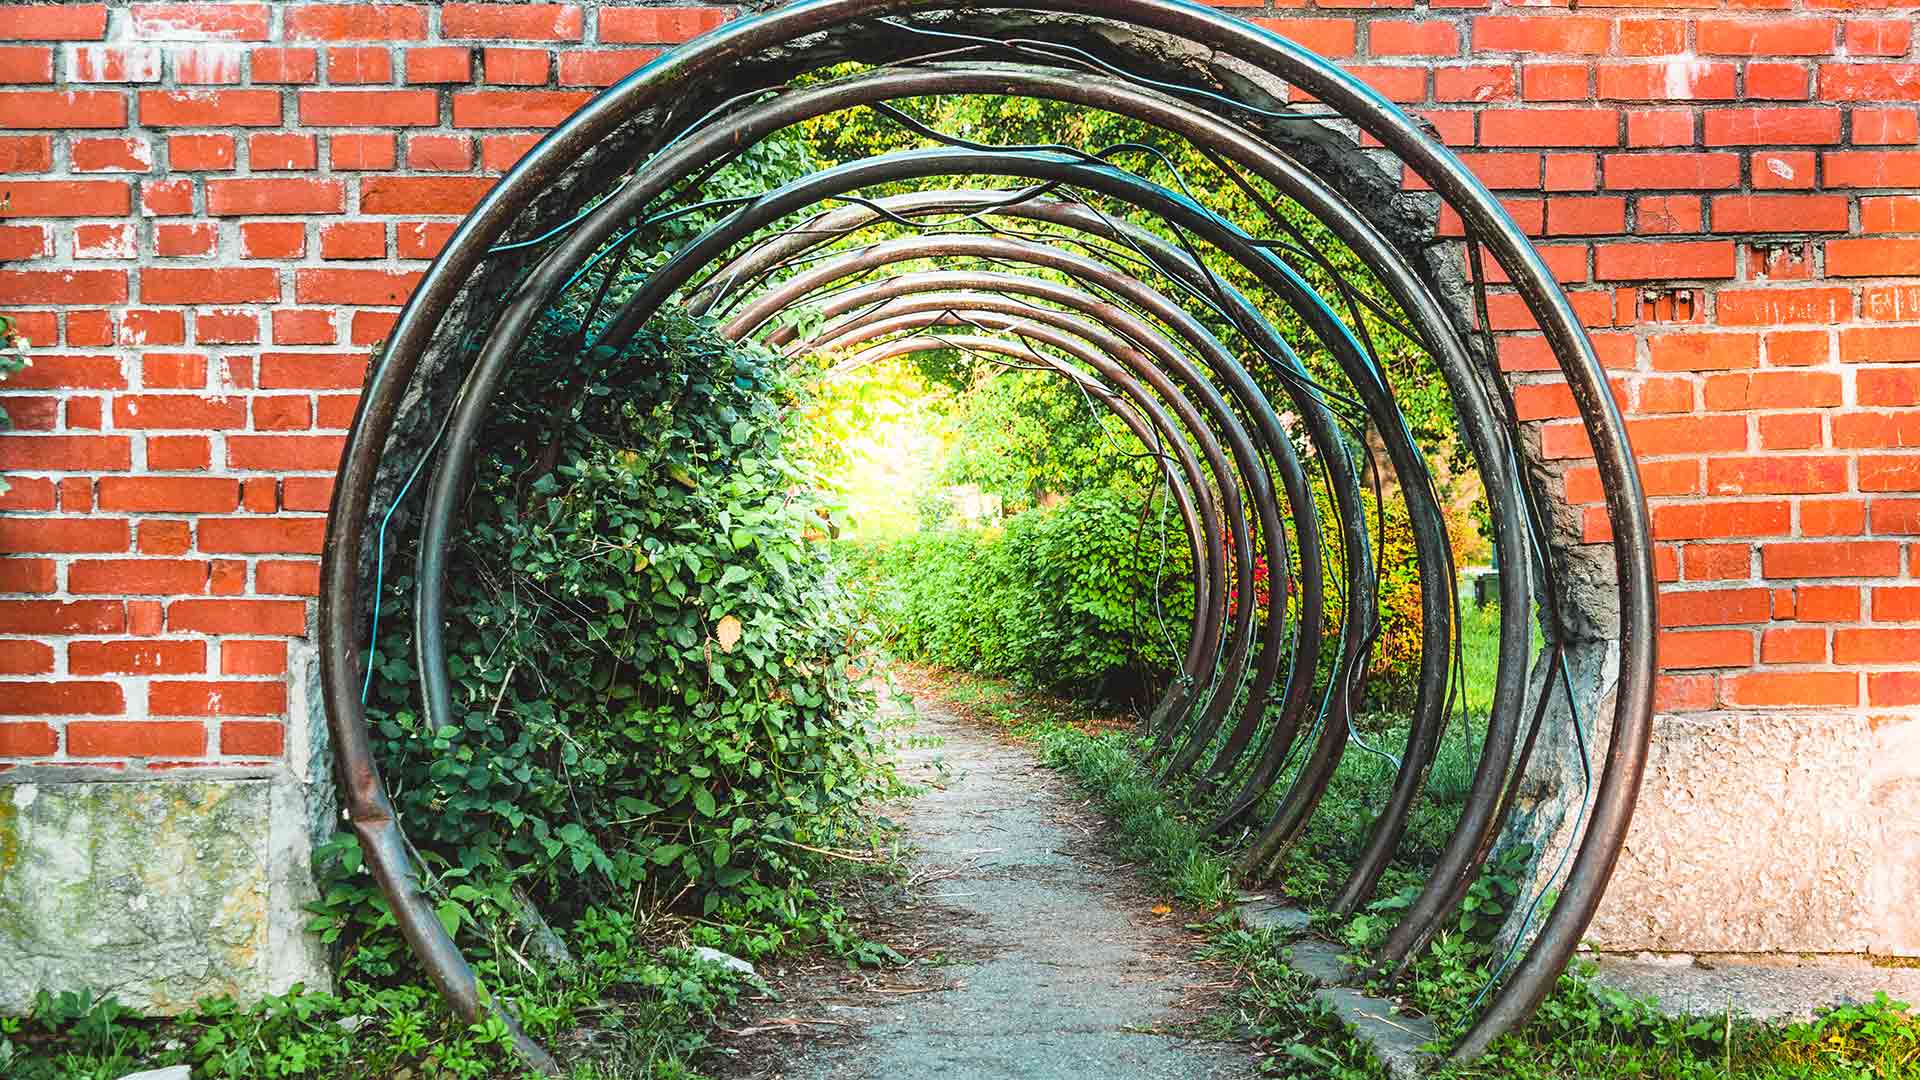 Symbolic portal to a green garden through a brick wall